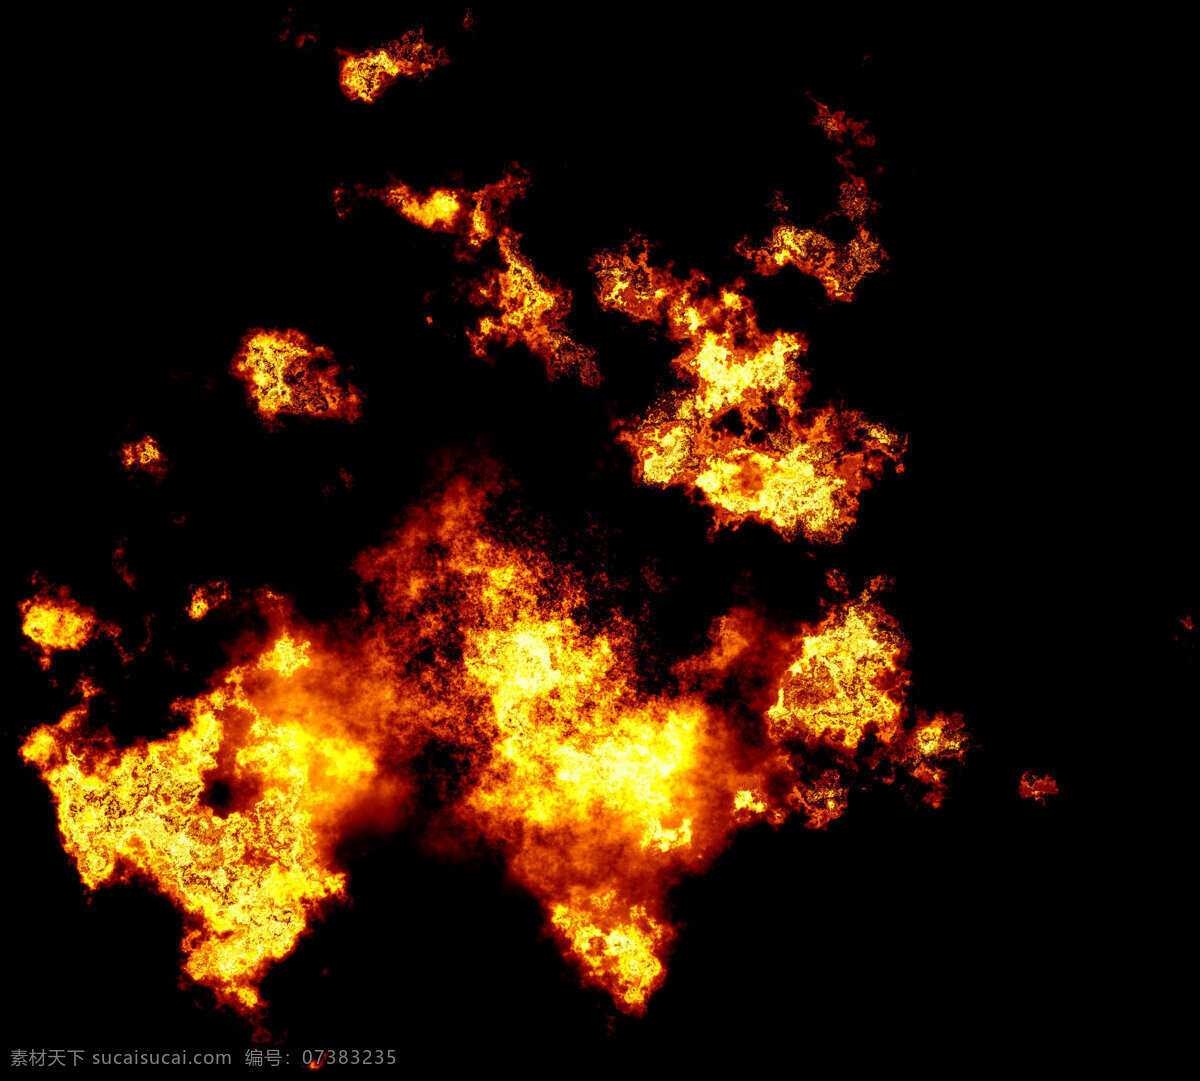 火山 爆炸 火焰 背景 烟雾 黑色 晚上 大伙 柴火 燃烧 炭火 烤火 火焰素材 火素材 自然景观 自然风光